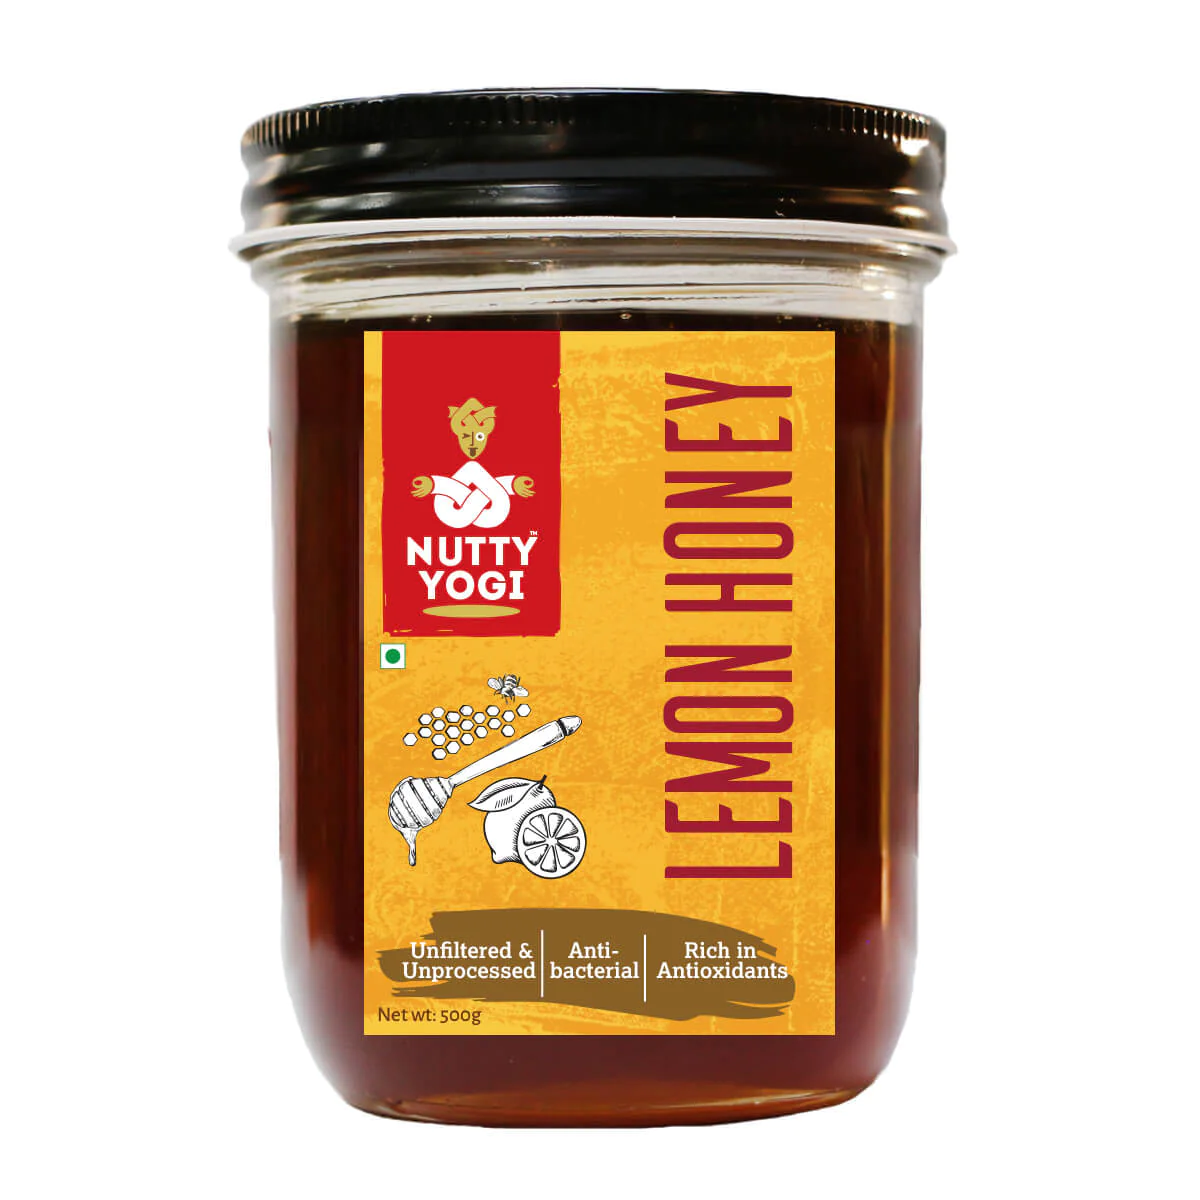 Product: Nutty Yogi Lemon Honey